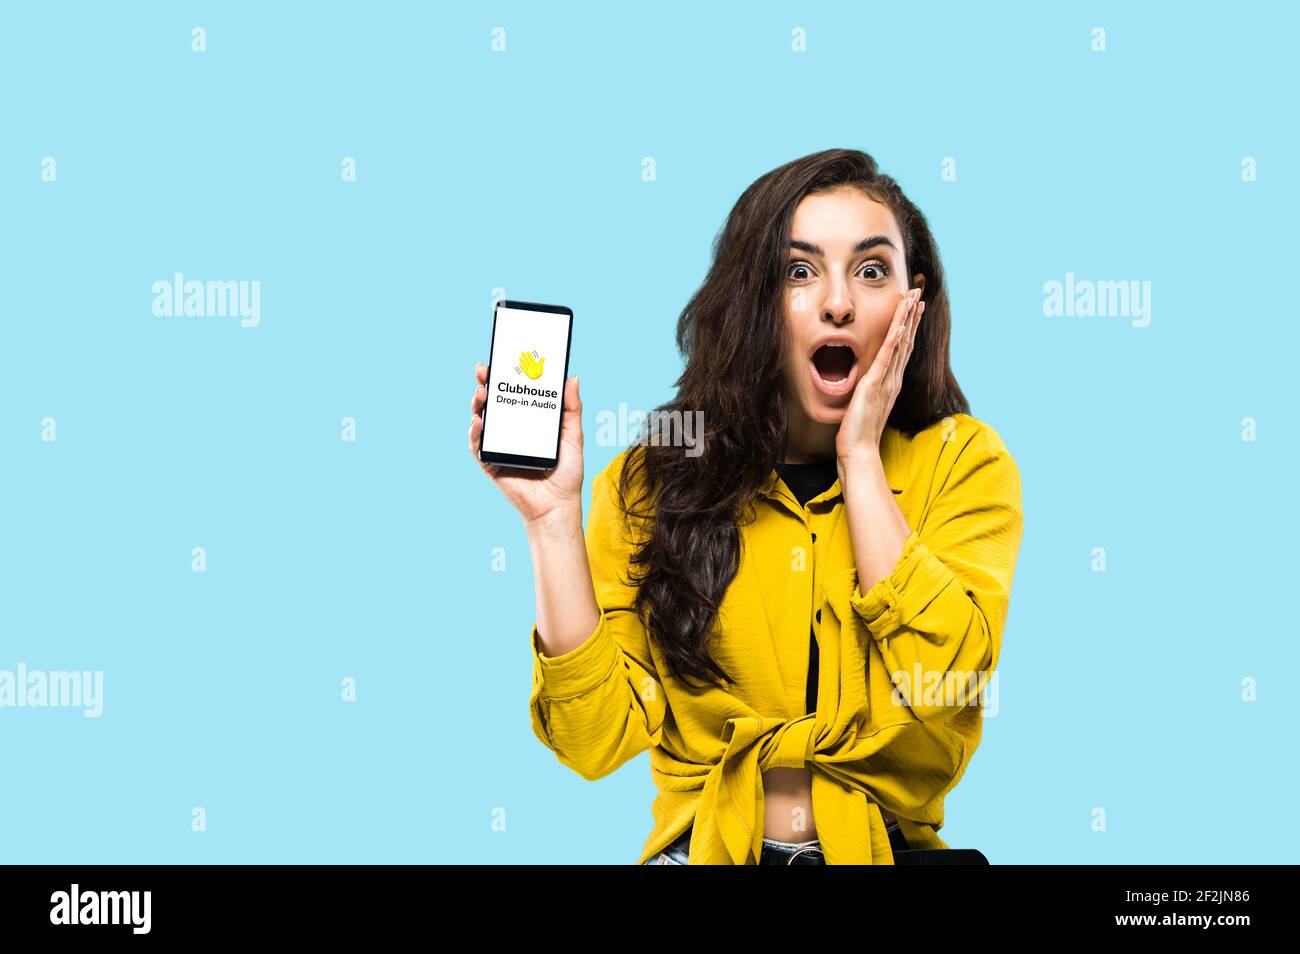 Kiev, Ucraina - 28 febbraio 2021. Una ragazza entusiasta tiene iPhone con il logo dell'app Clubhouse sullo schermo, app solo per la comunicazione audio, di persone diverse in tutto il mondo Foto Stock